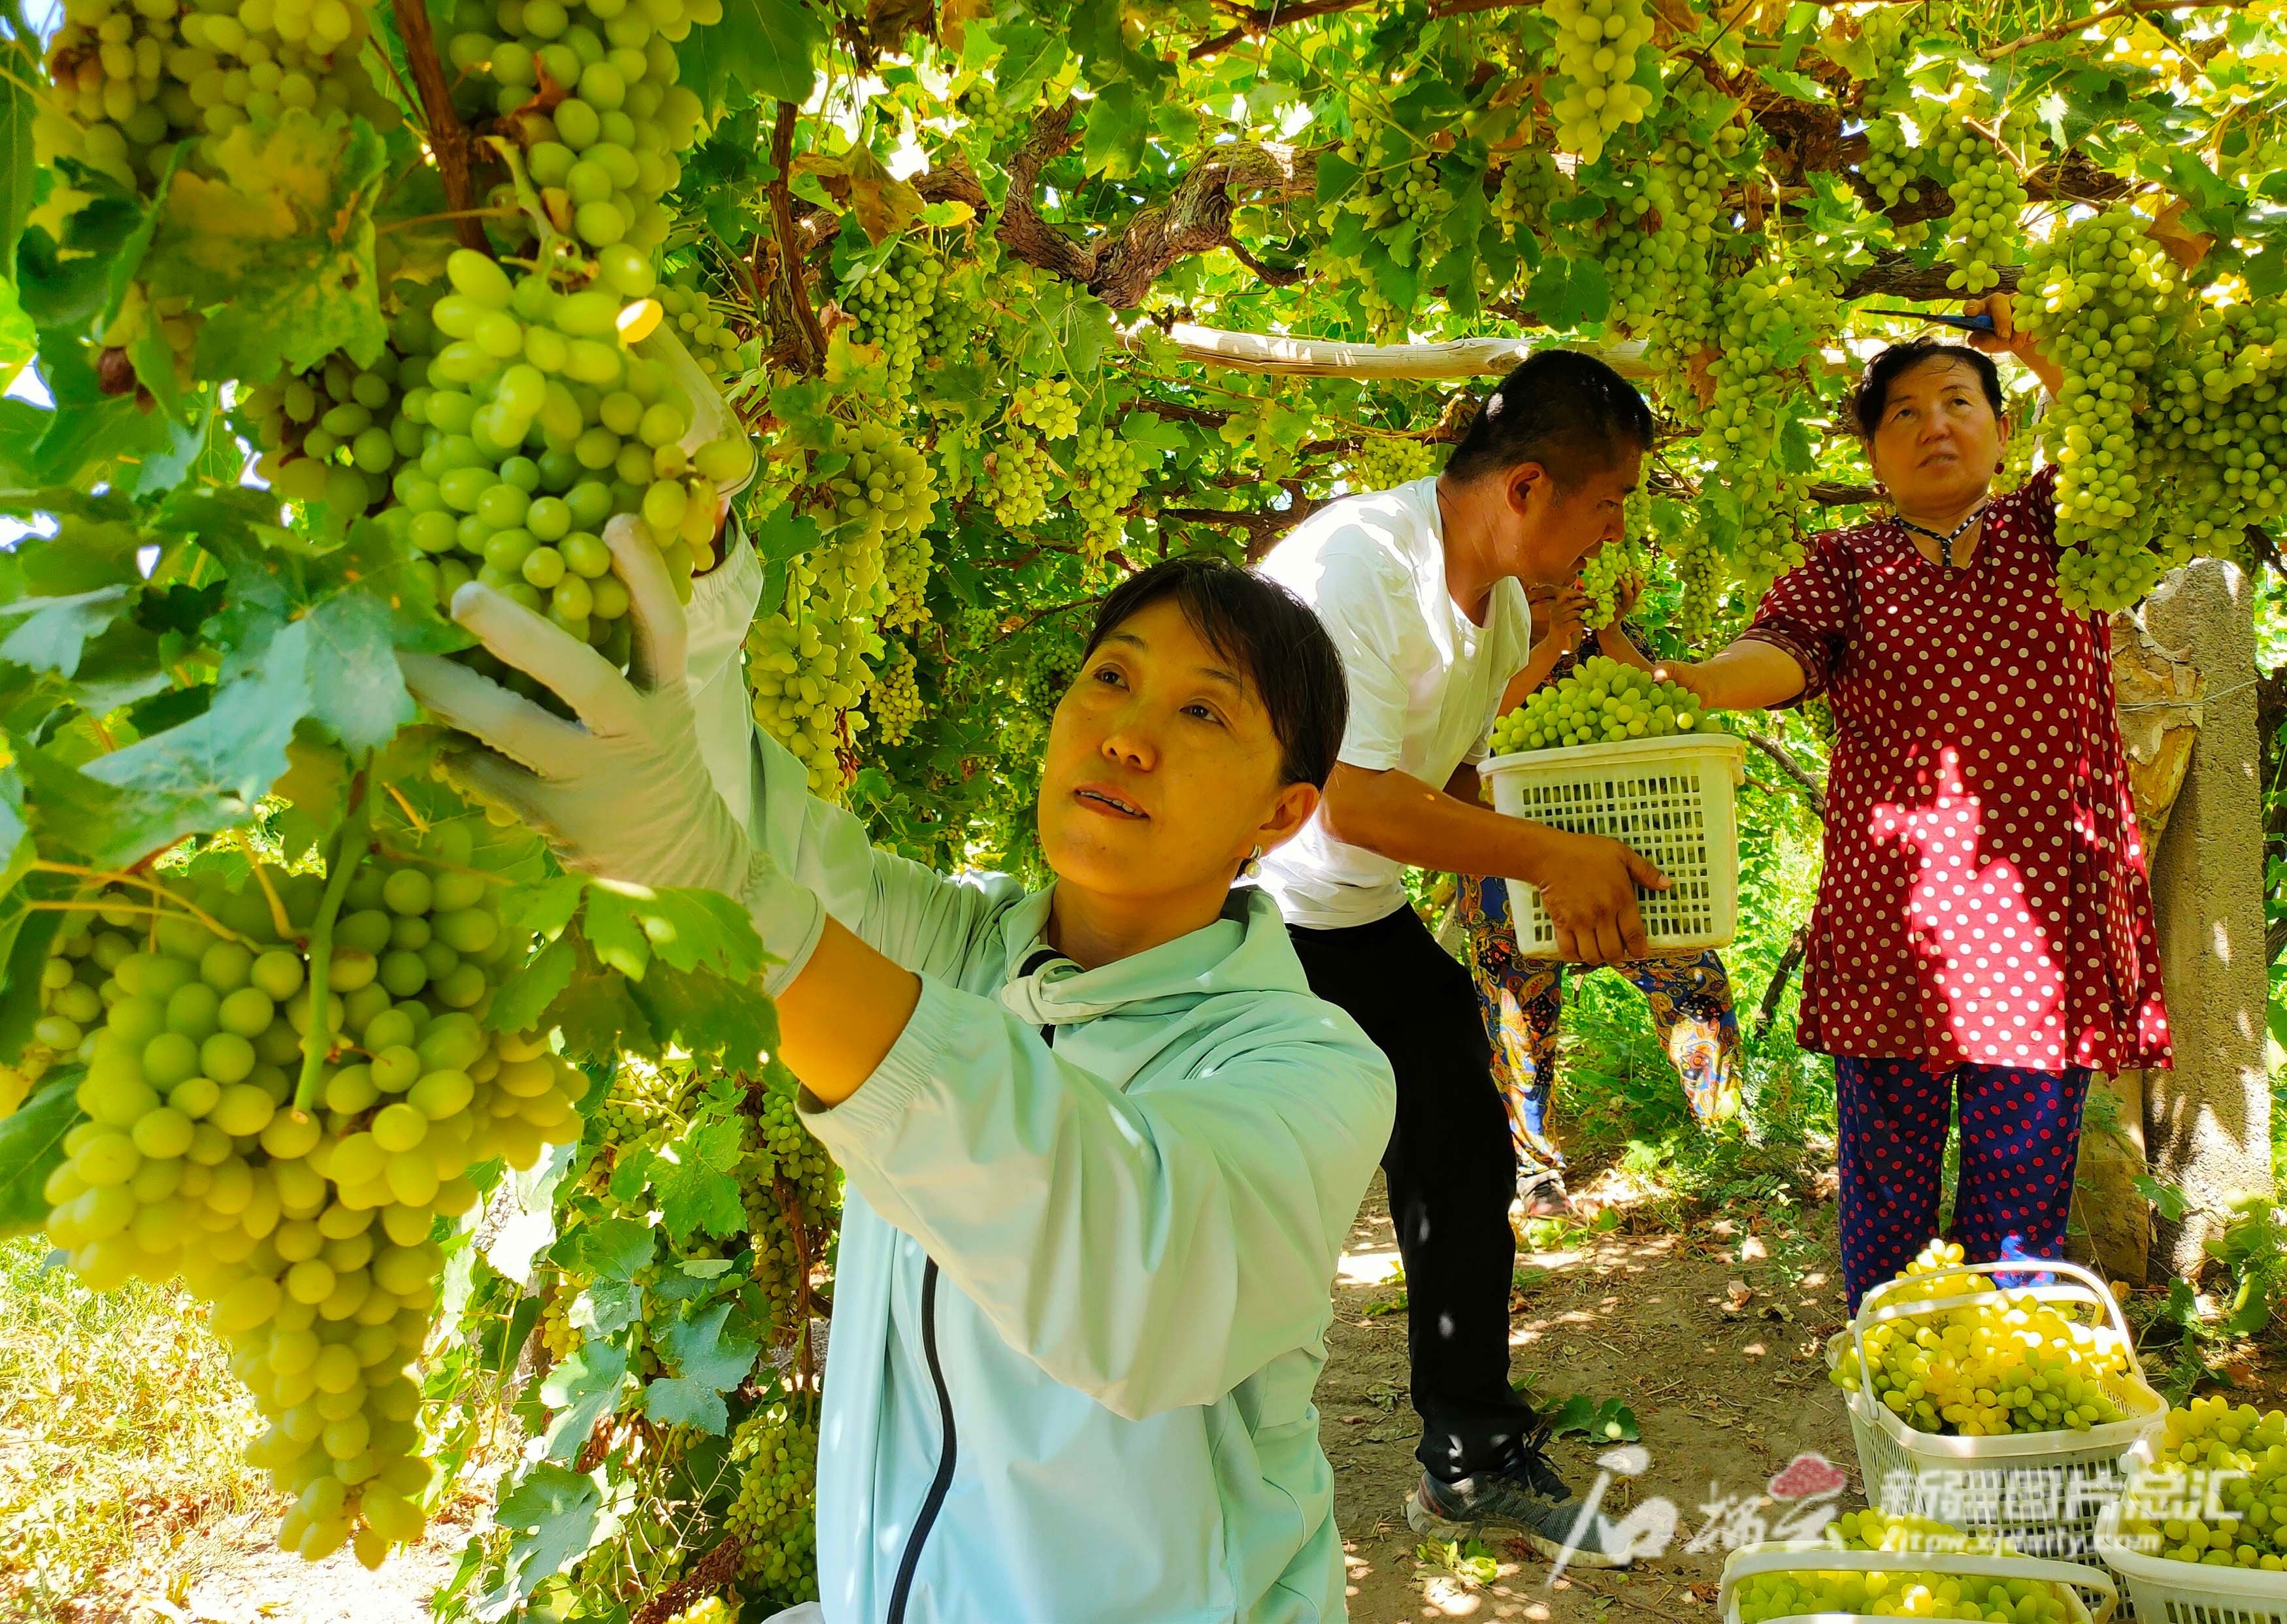 新疆葡萄甲天下 200多种葡萄靓丽登场二十六届吐鲁番葡萄节